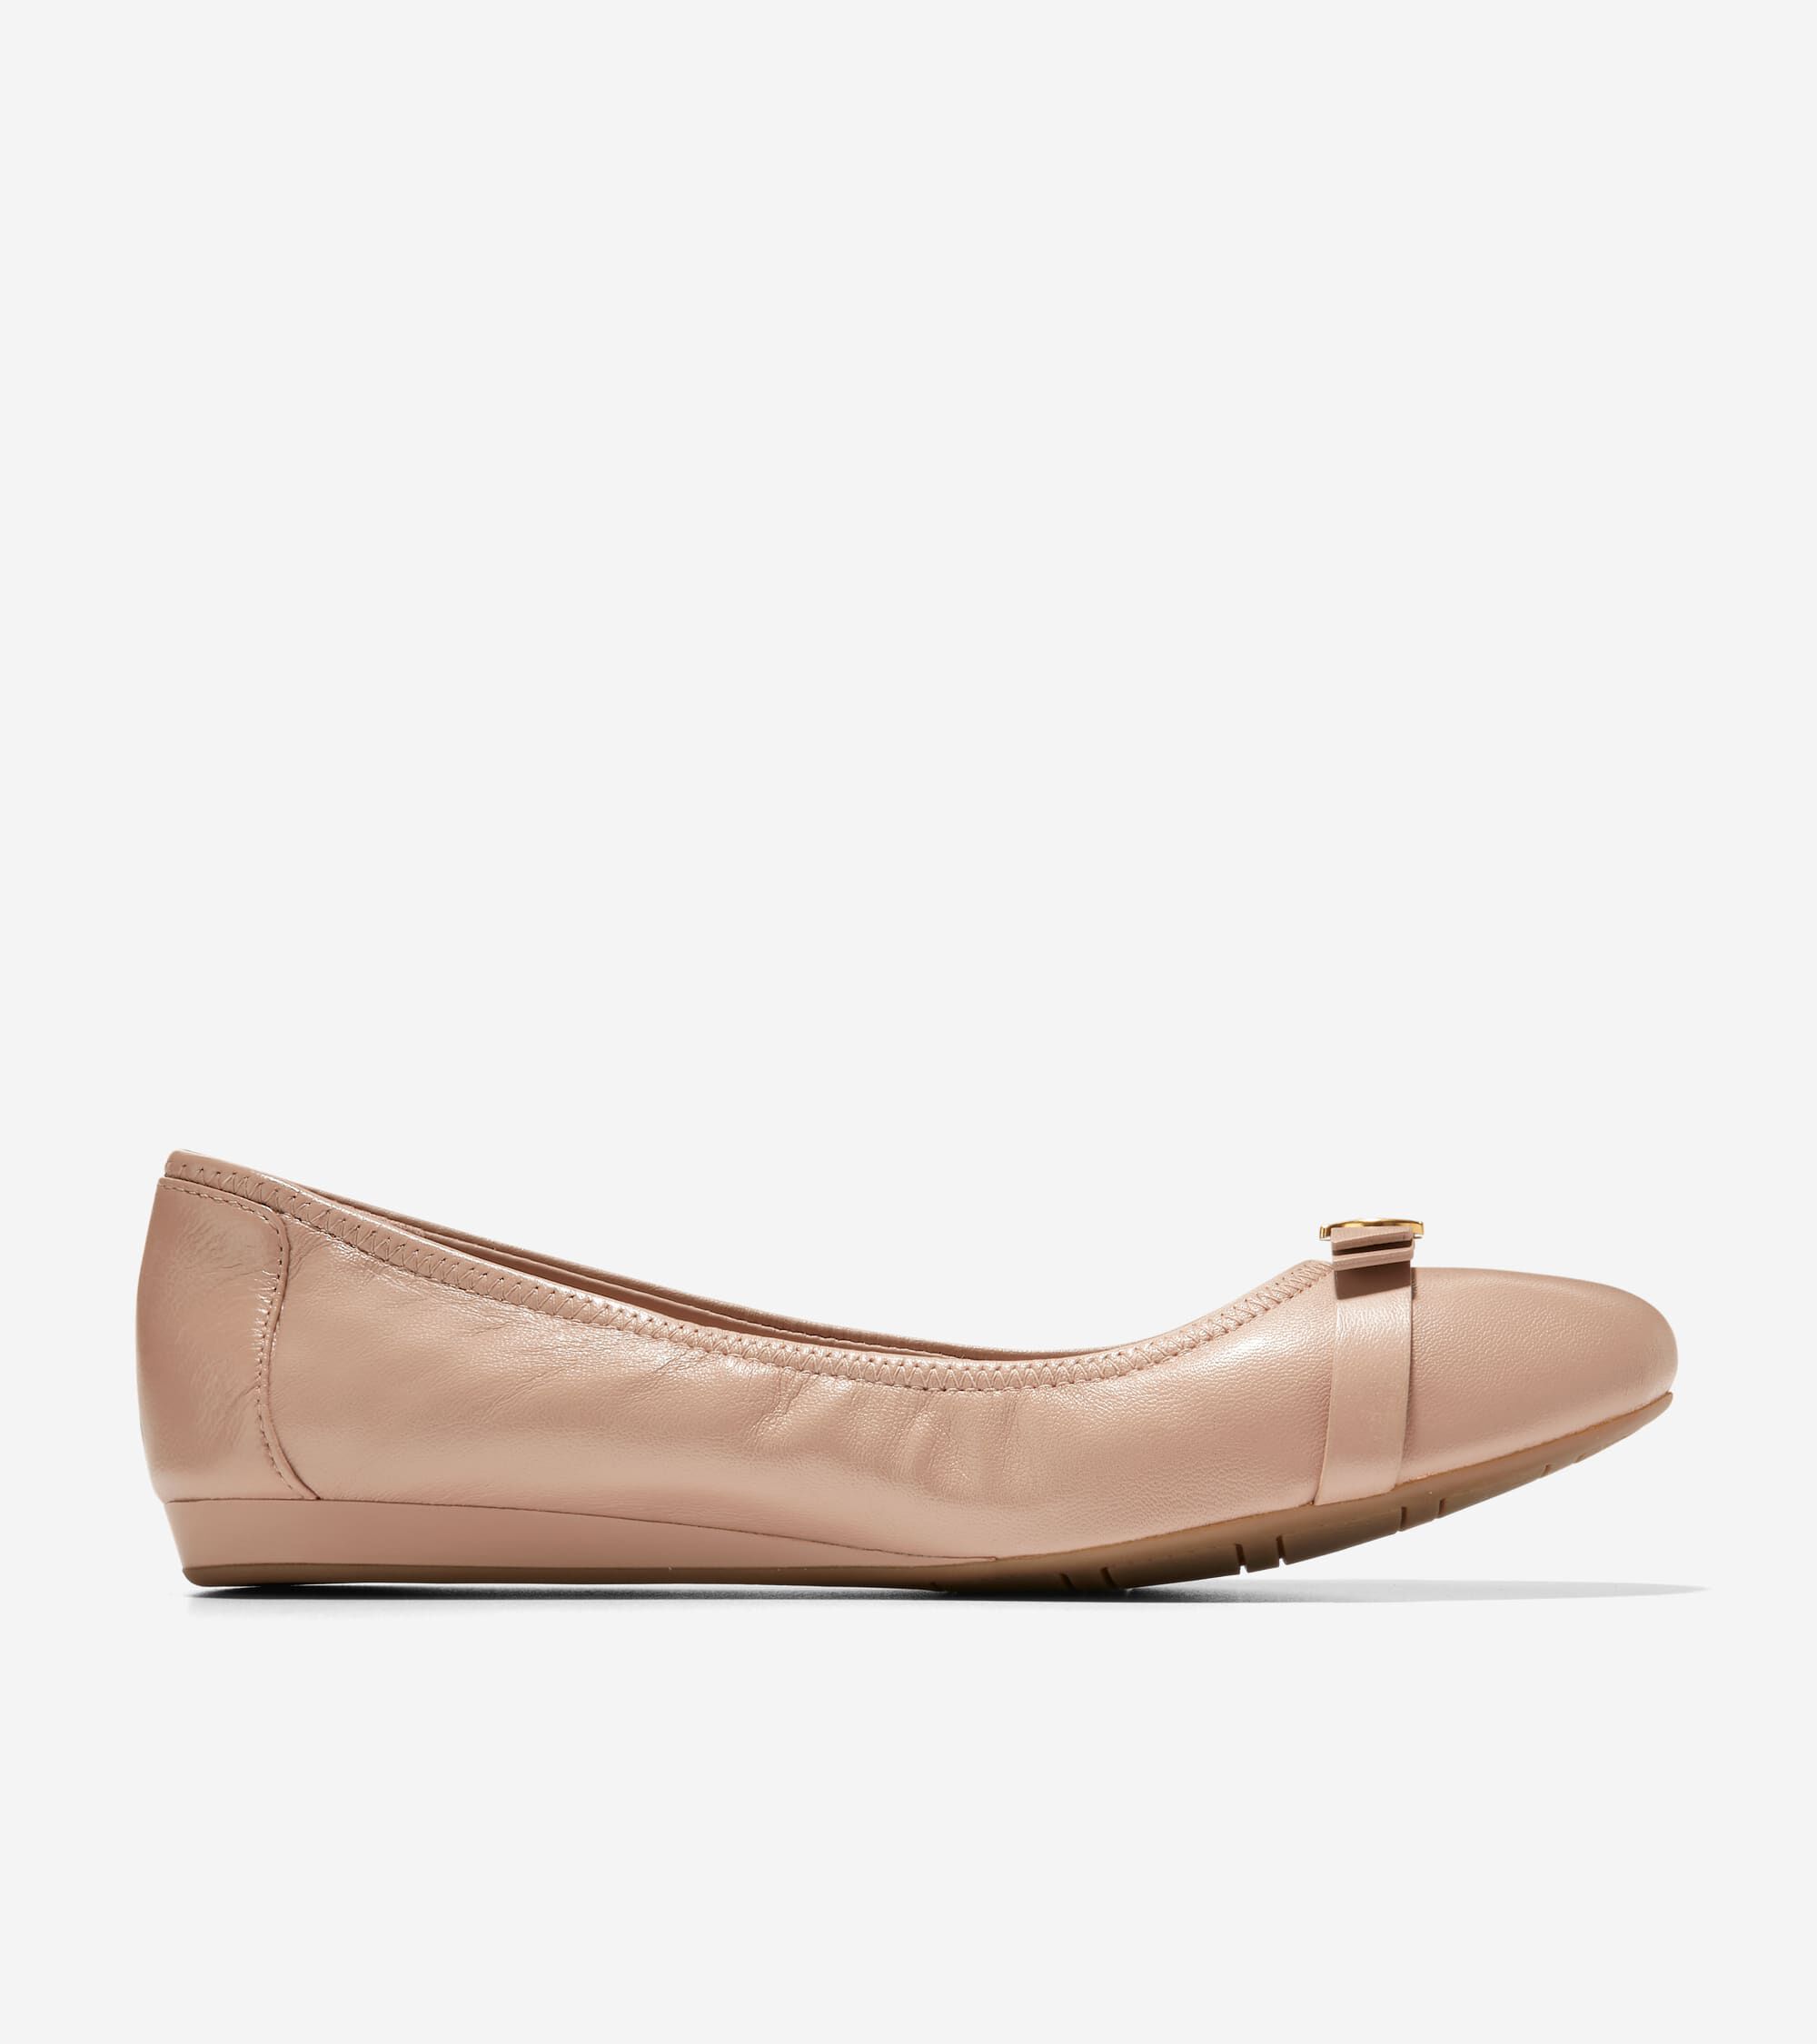 Women's Flats, Slip-ons, Ballet Shoes | Cole Haan